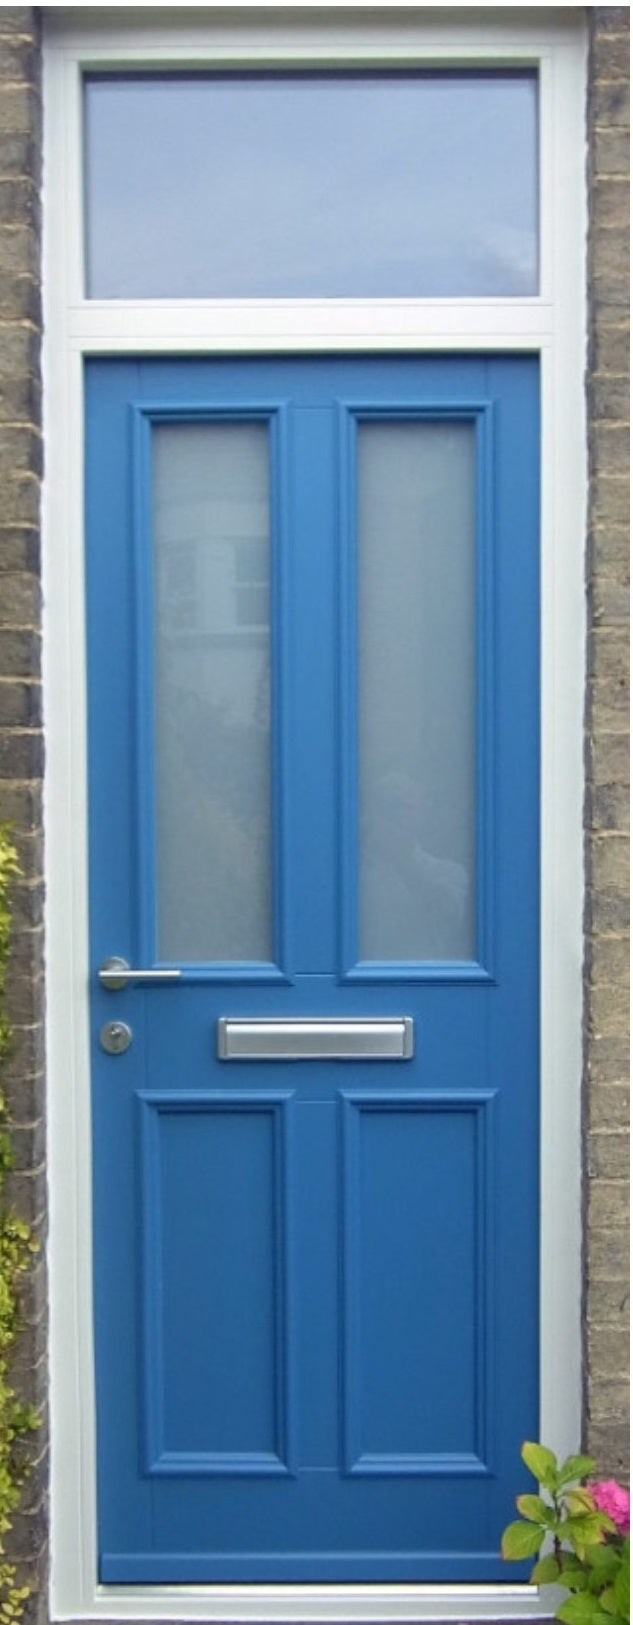 Kloeber Kensington External Door and toplight